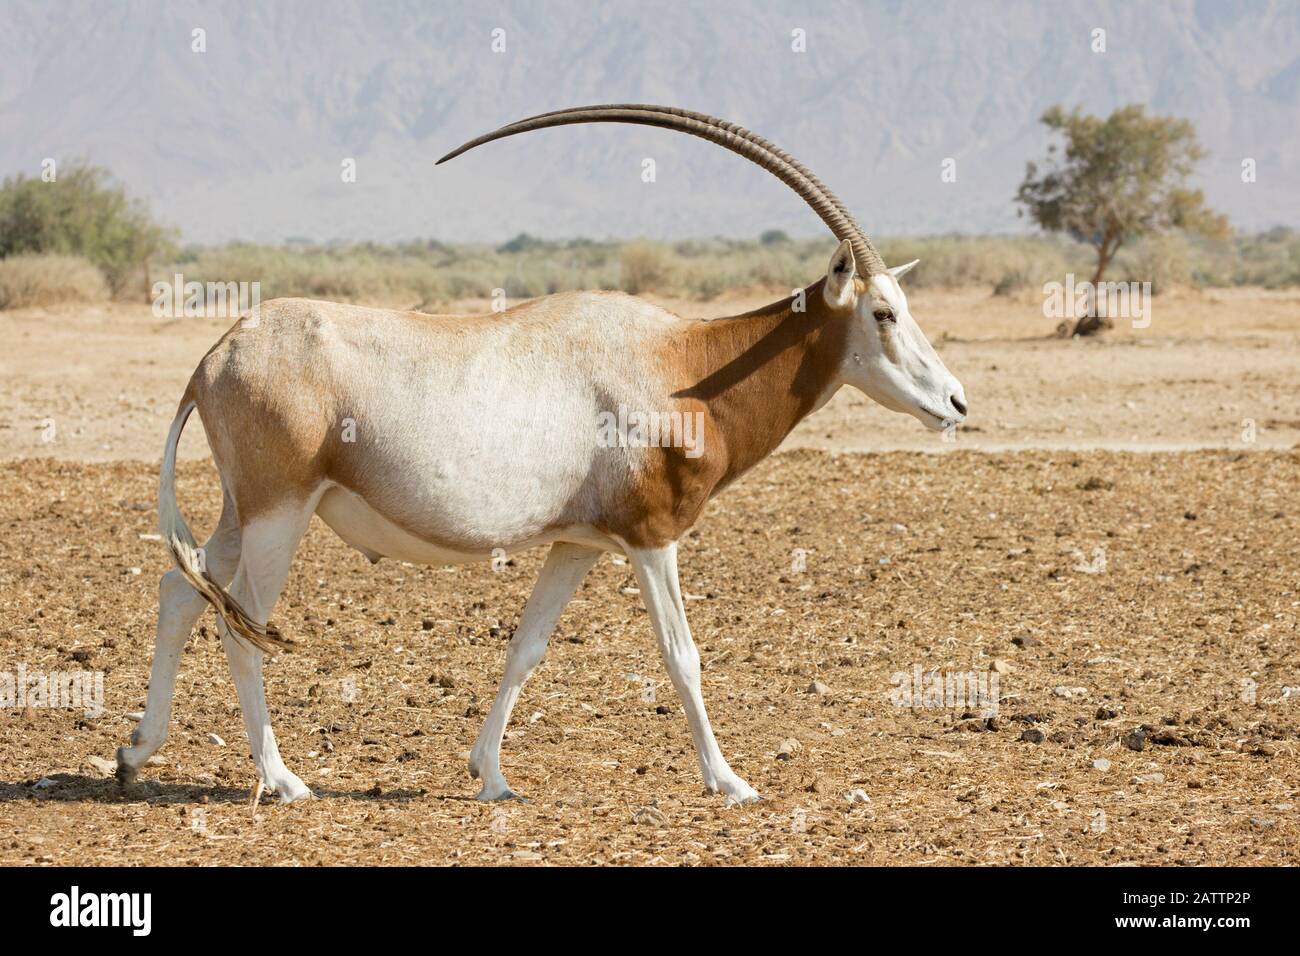 L'oryx à cornes de Scimitar, une espèce en voie de disparition, traversant le désert du Néguev dans le centre de reproduction de la réserve naturelle de Yotvata Hai-Bar (Oryx dammah), Israël Banque D'Images